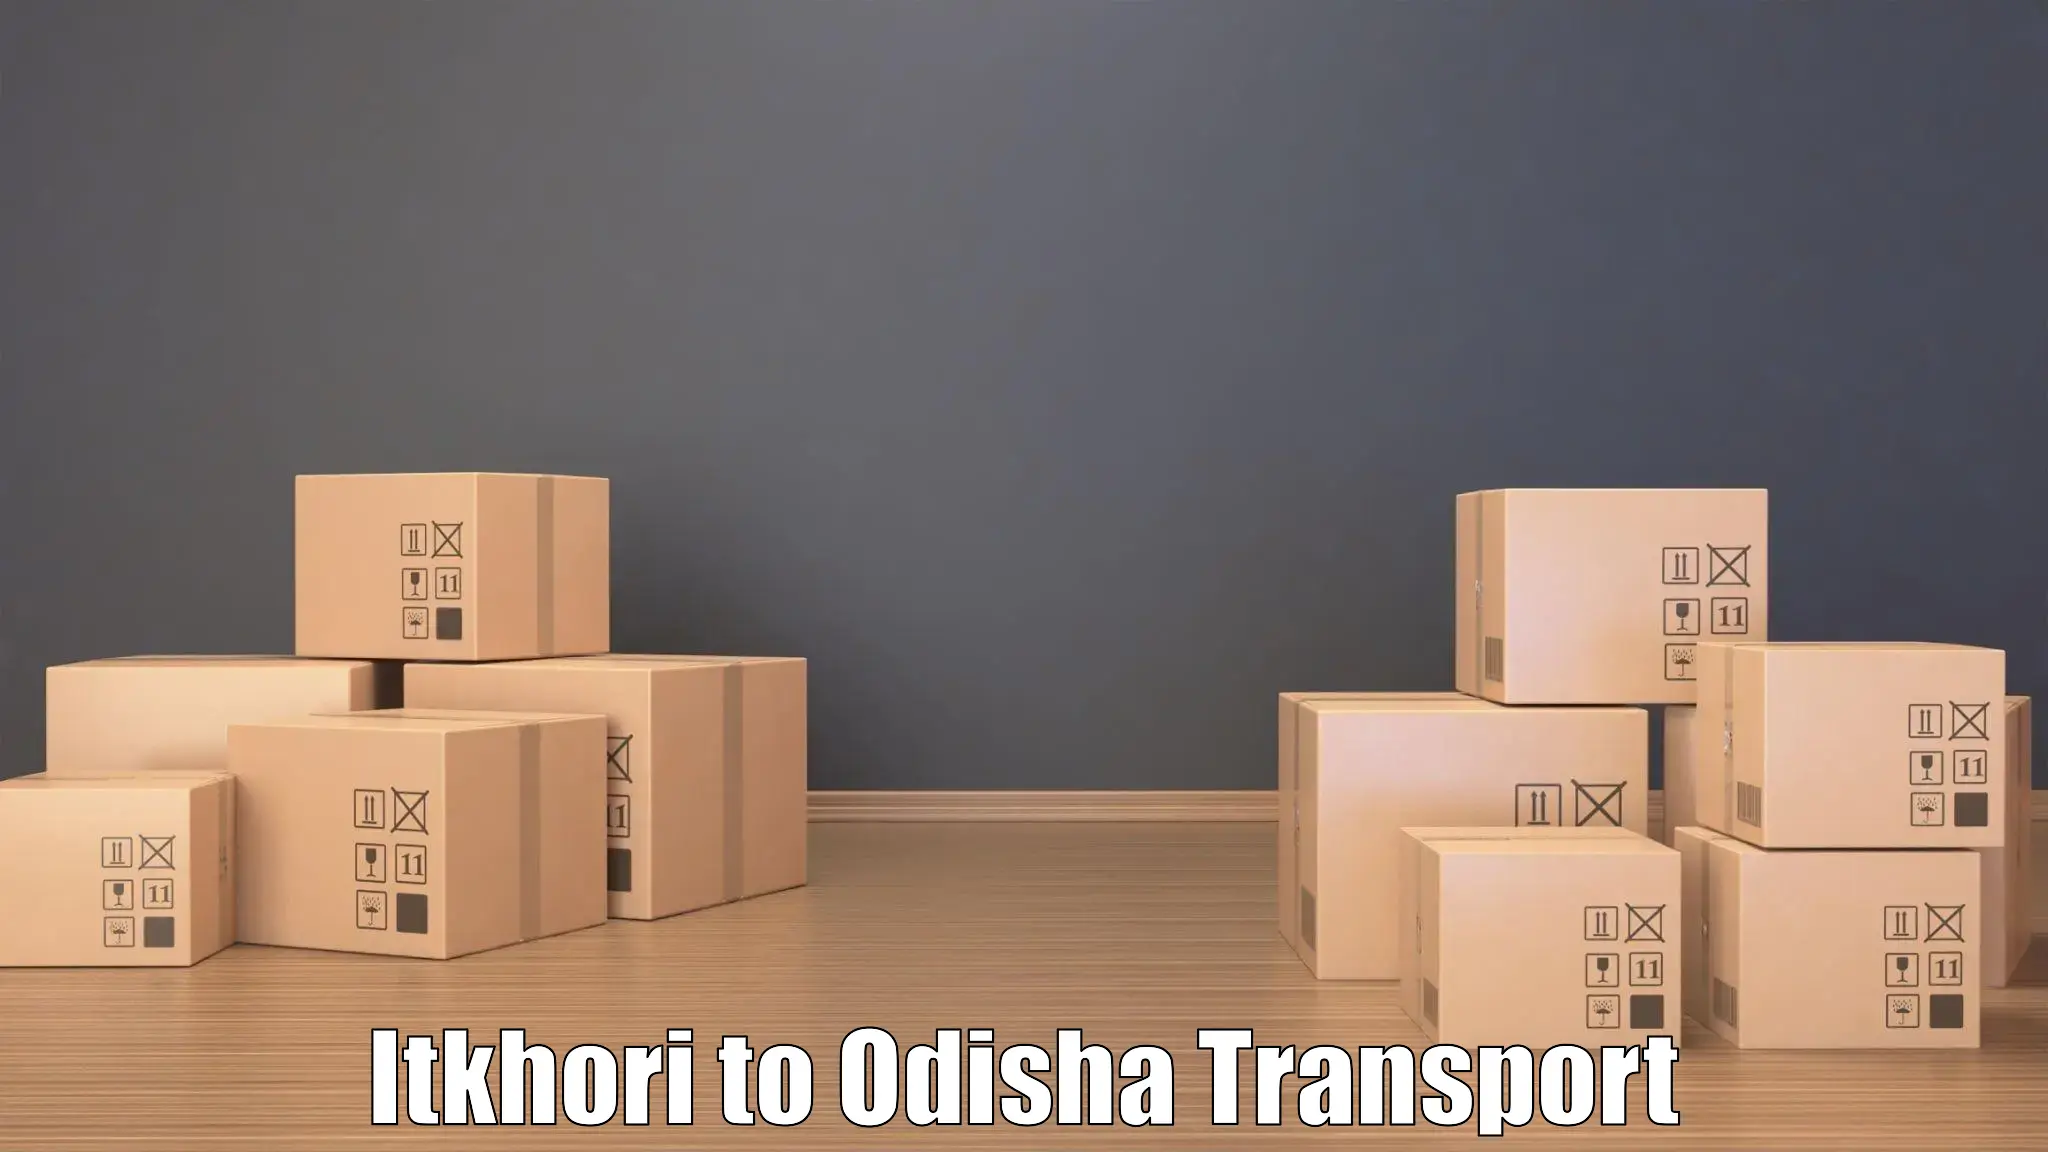 Transport in sharing Itkhori to Sambalpur